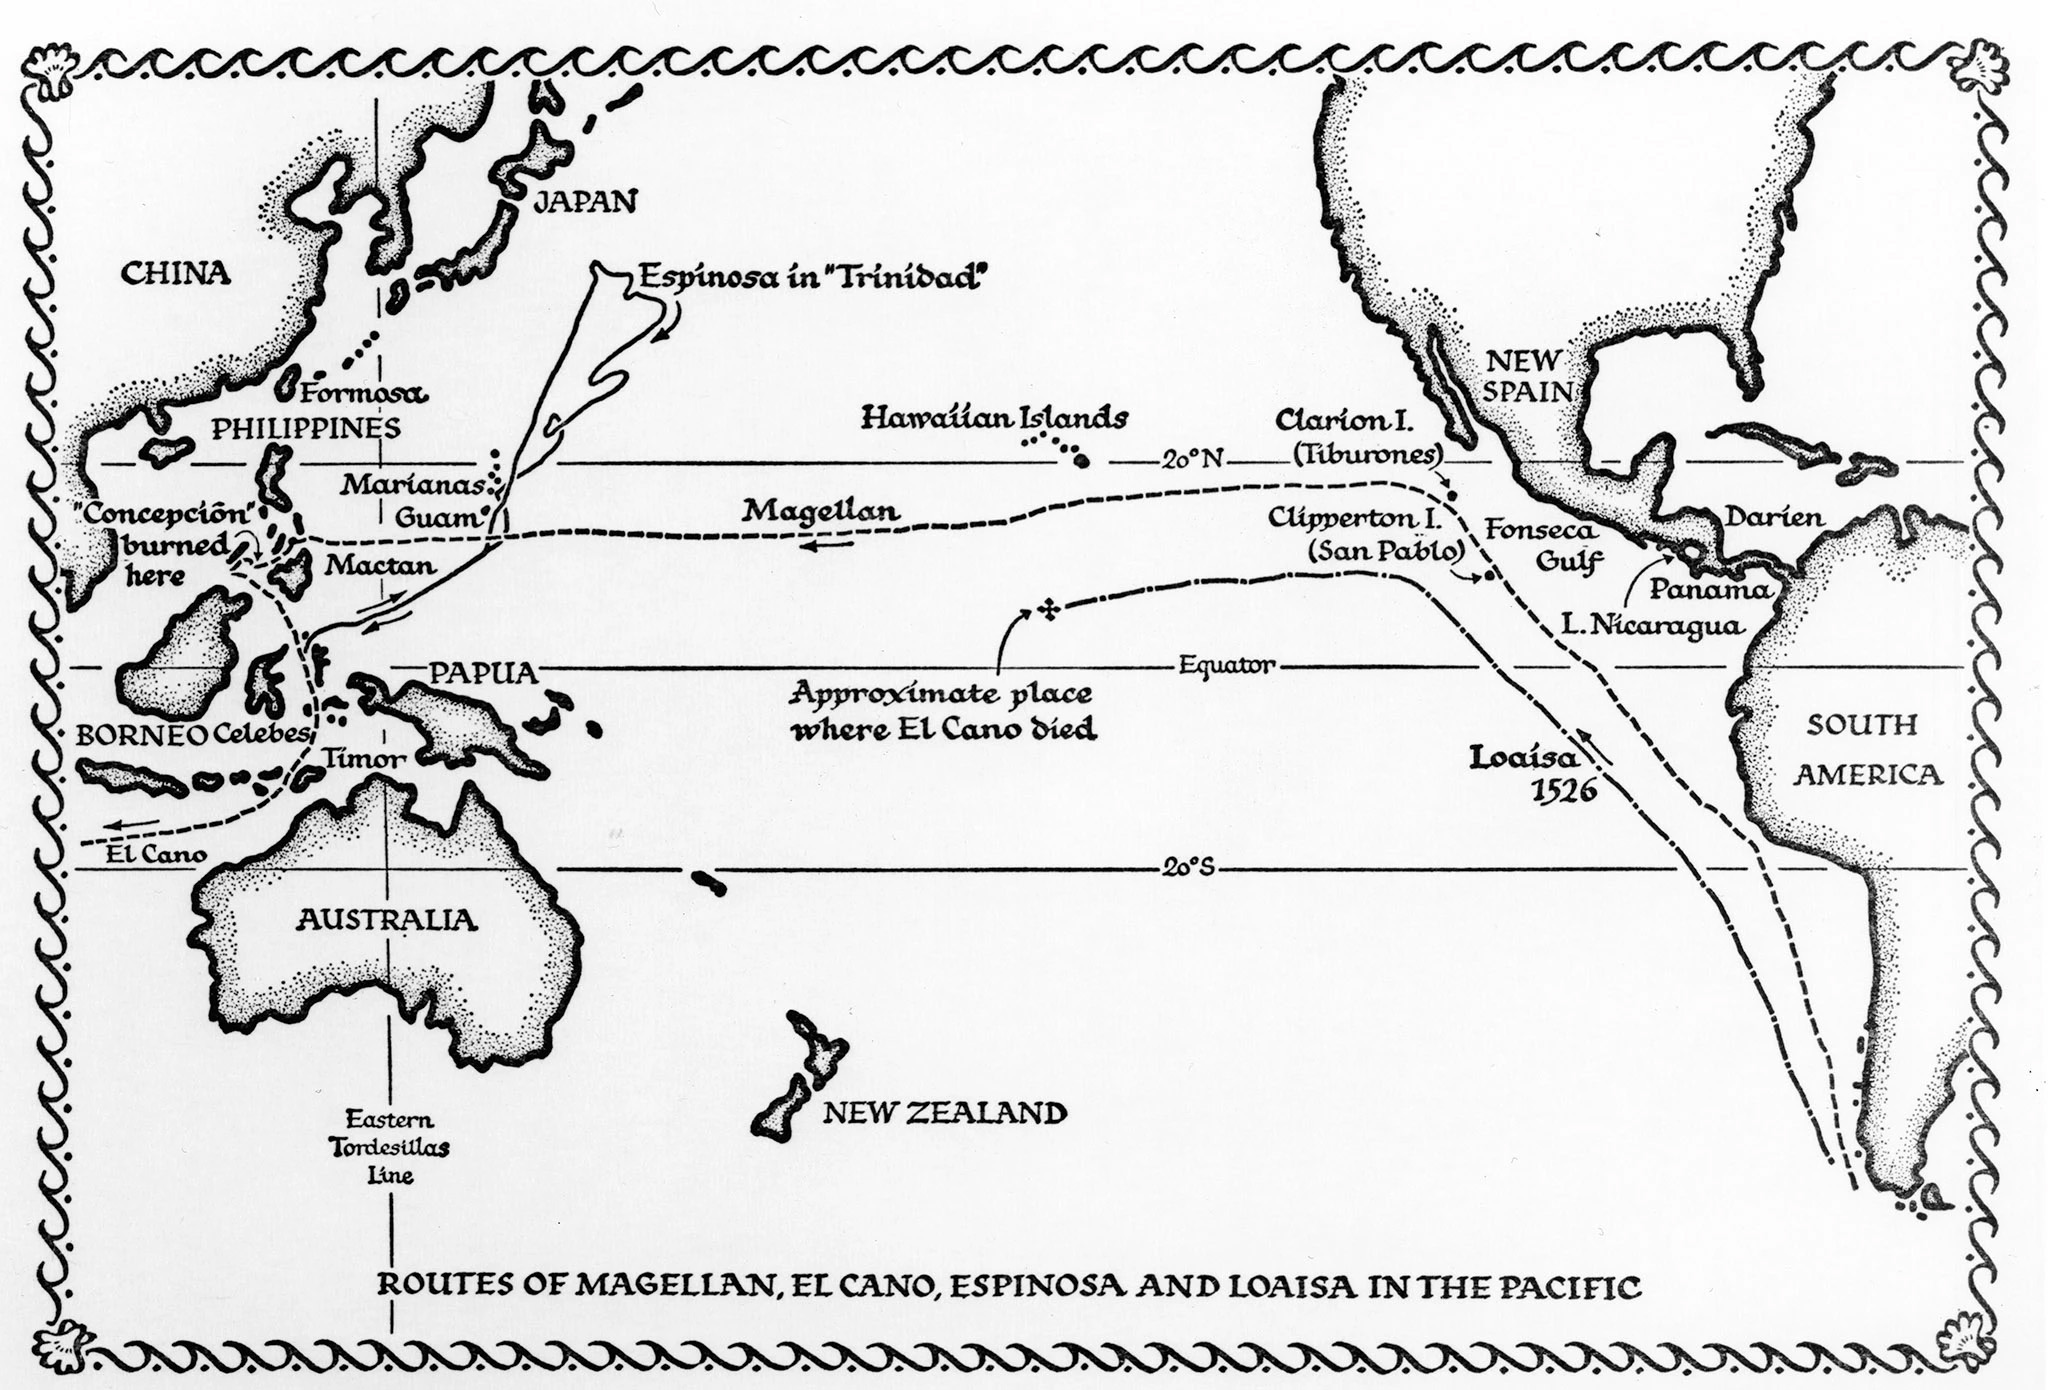 Ferdinand Magellan - Ages of Exploration